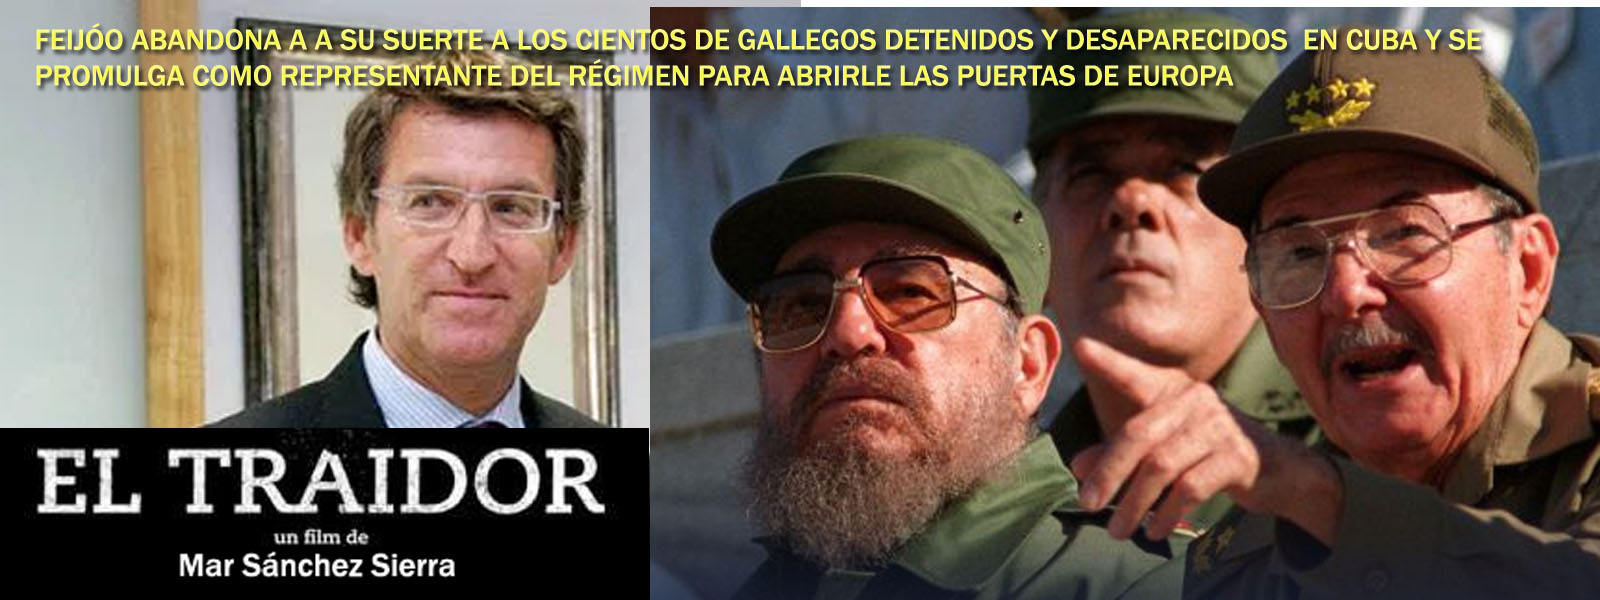 En el año 2021 han formado parte de la lista de Prisoners Defenders 955 prisoneros políticos en Cuba de los que algunos son gallegos despreciados por Feijóo